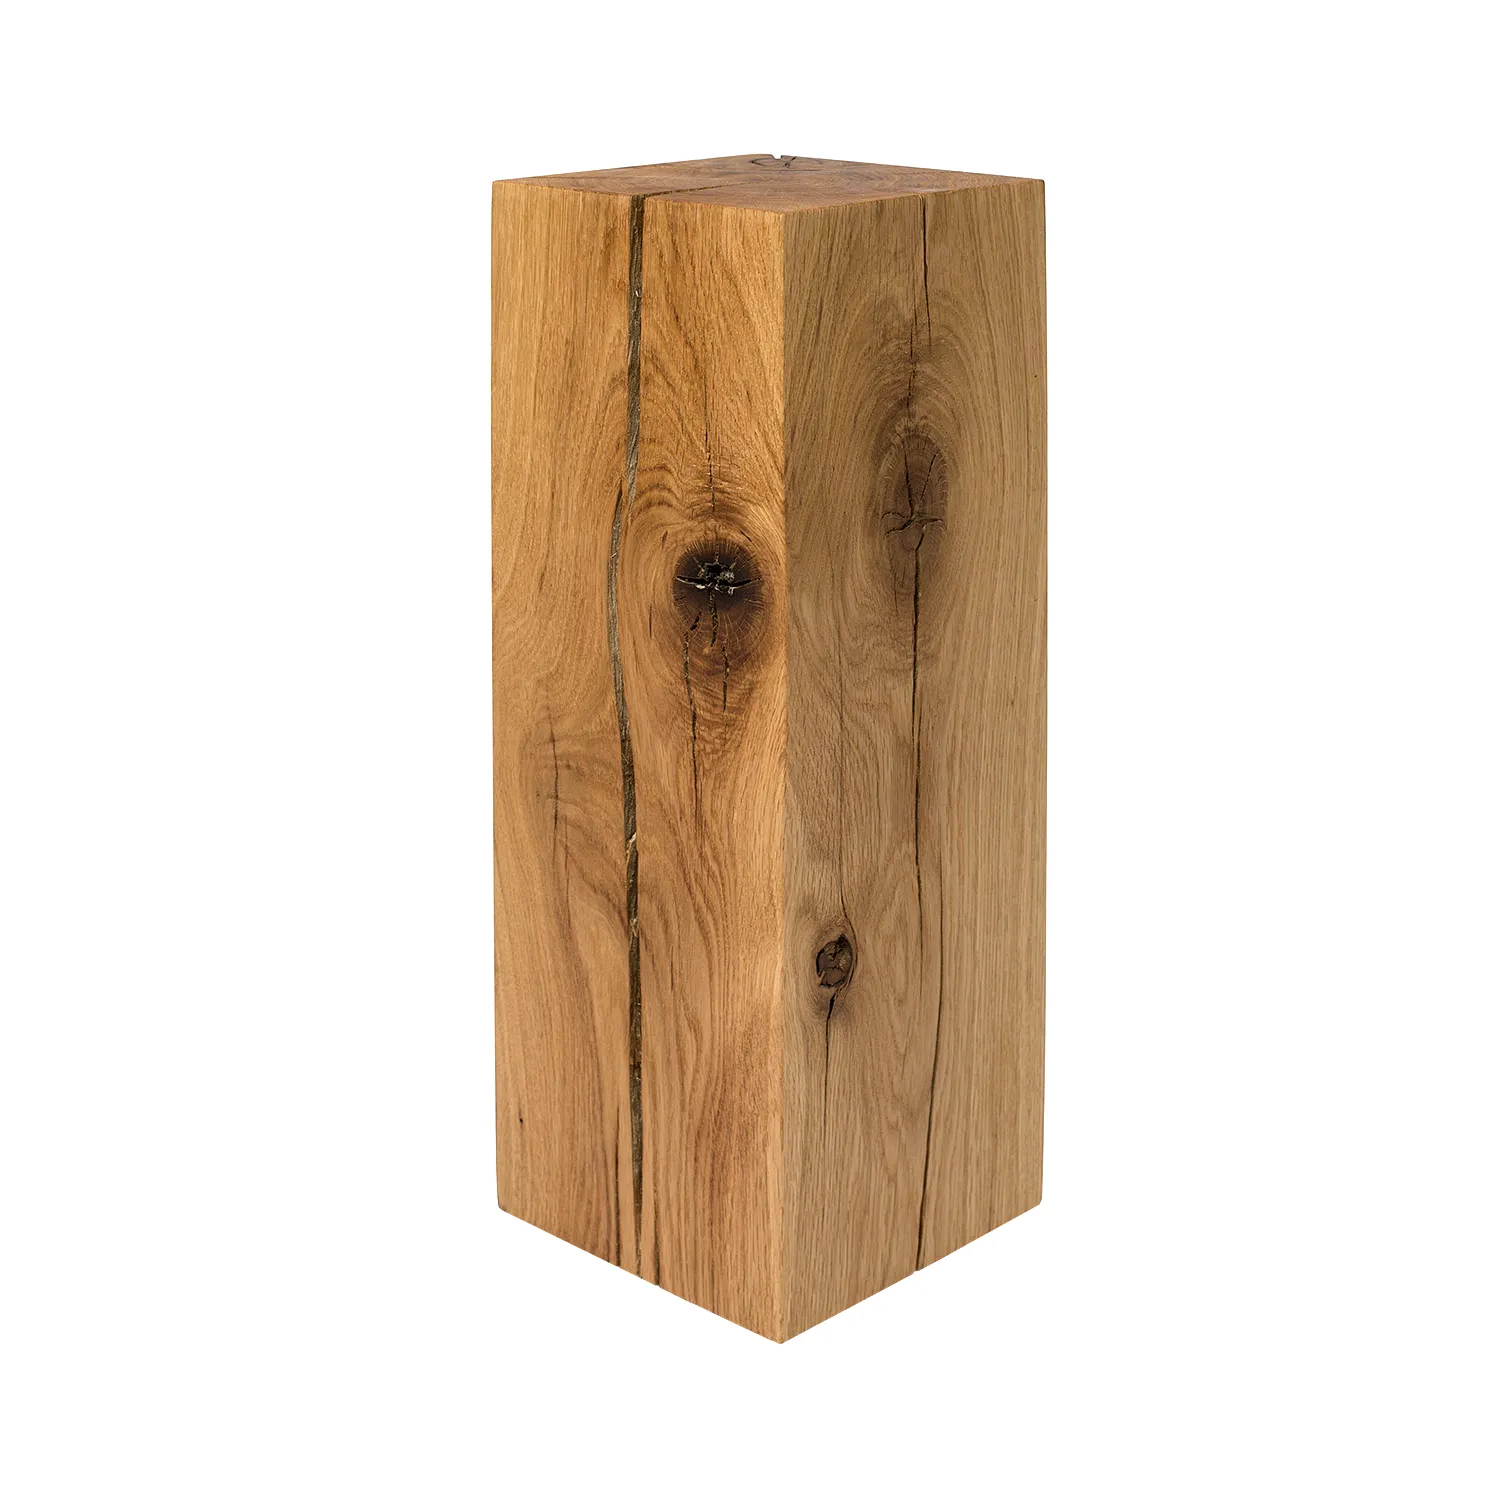 Holzblock Beistelltisch aus Eichenholz mit auffälligem Holzbild